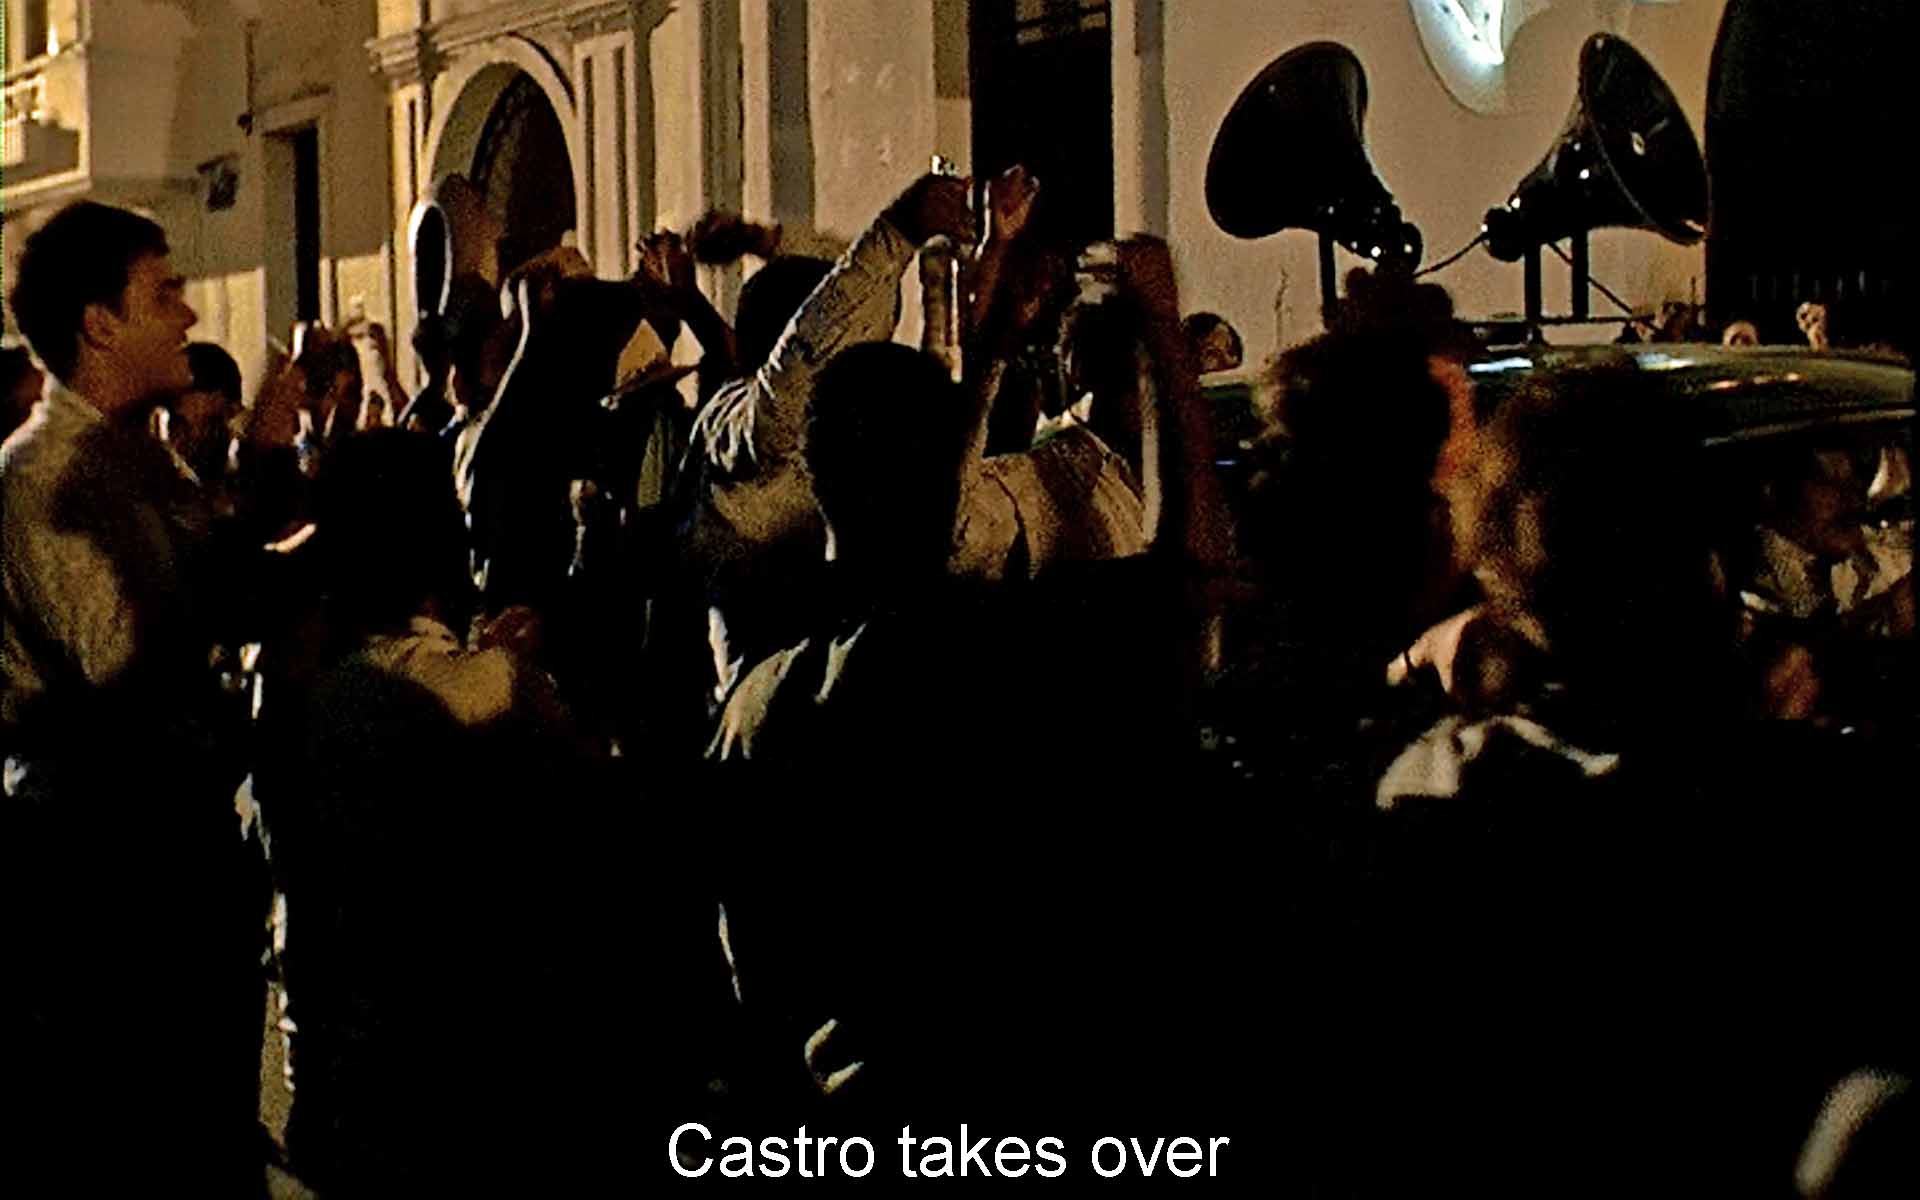 Castro takes over